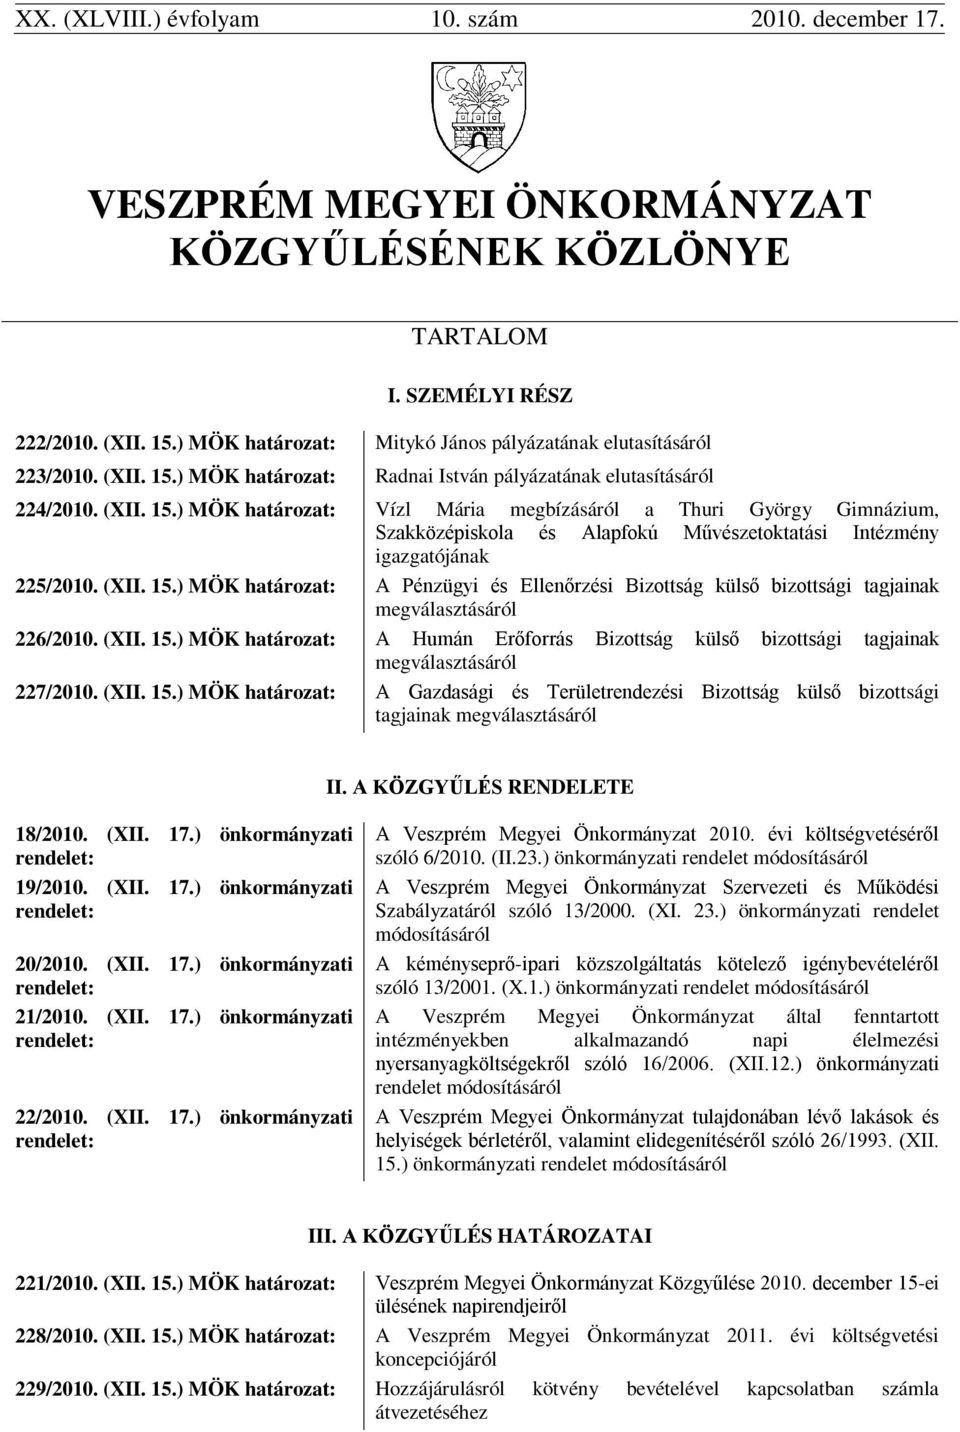 ) MÖK határozat: Radnai István pályázatának elutasításáról 224/2010. (XII. 15.